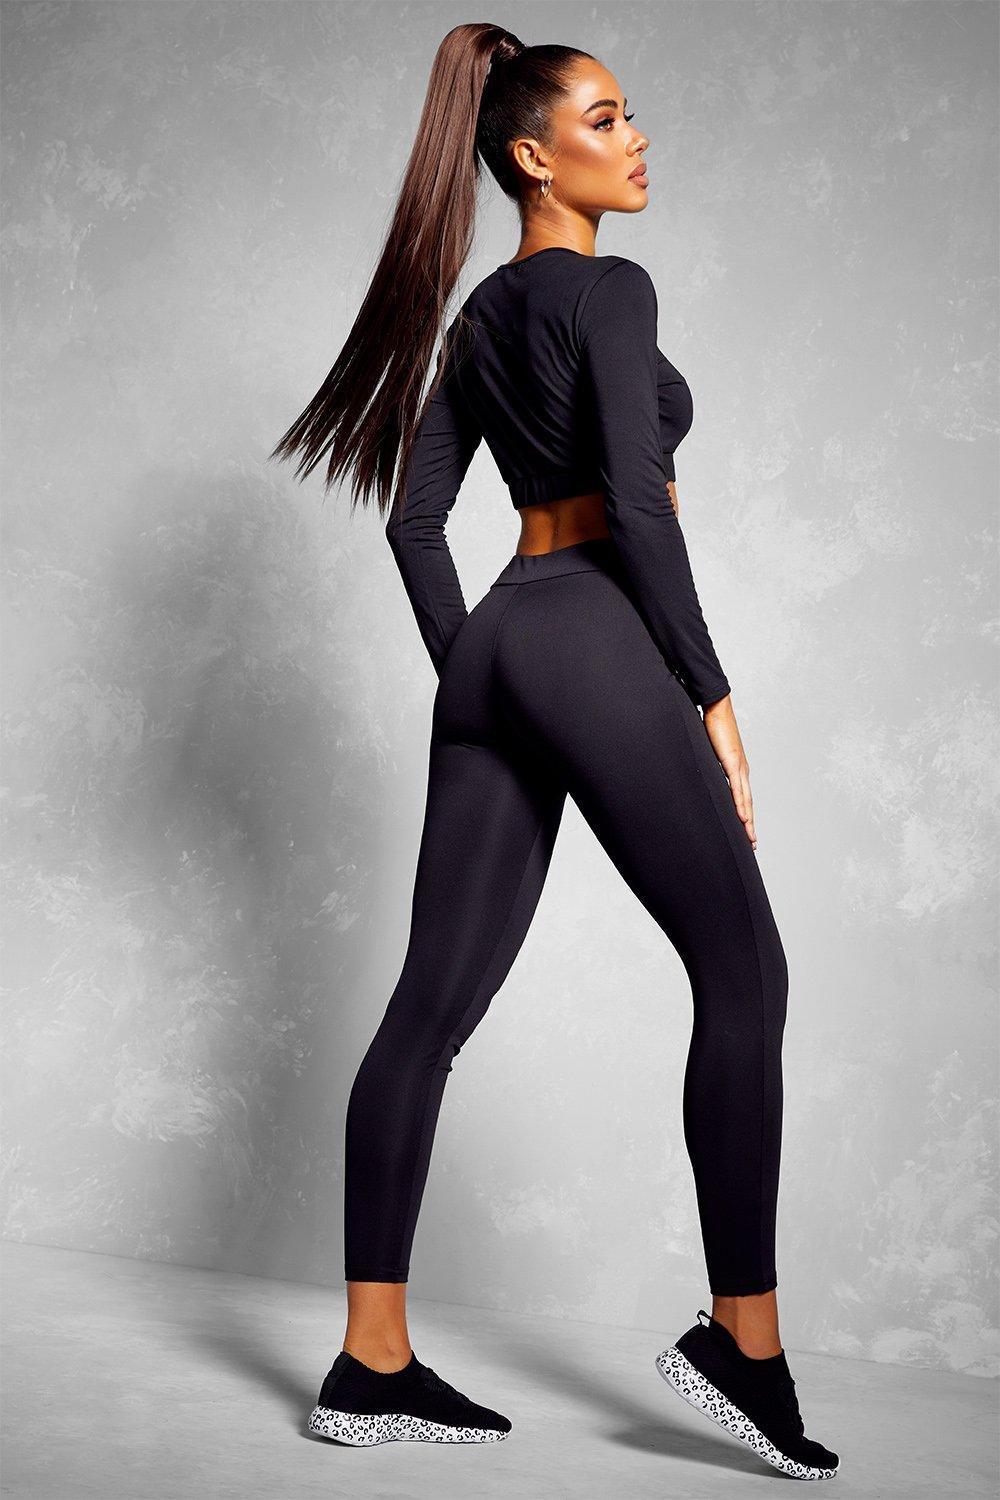 https://media.boohoo.com/i/boohoo/fzz74708_black_xl_1/donna-nero-fit-set-palestra-top-e-legging-con-maniche-lunghe-woman